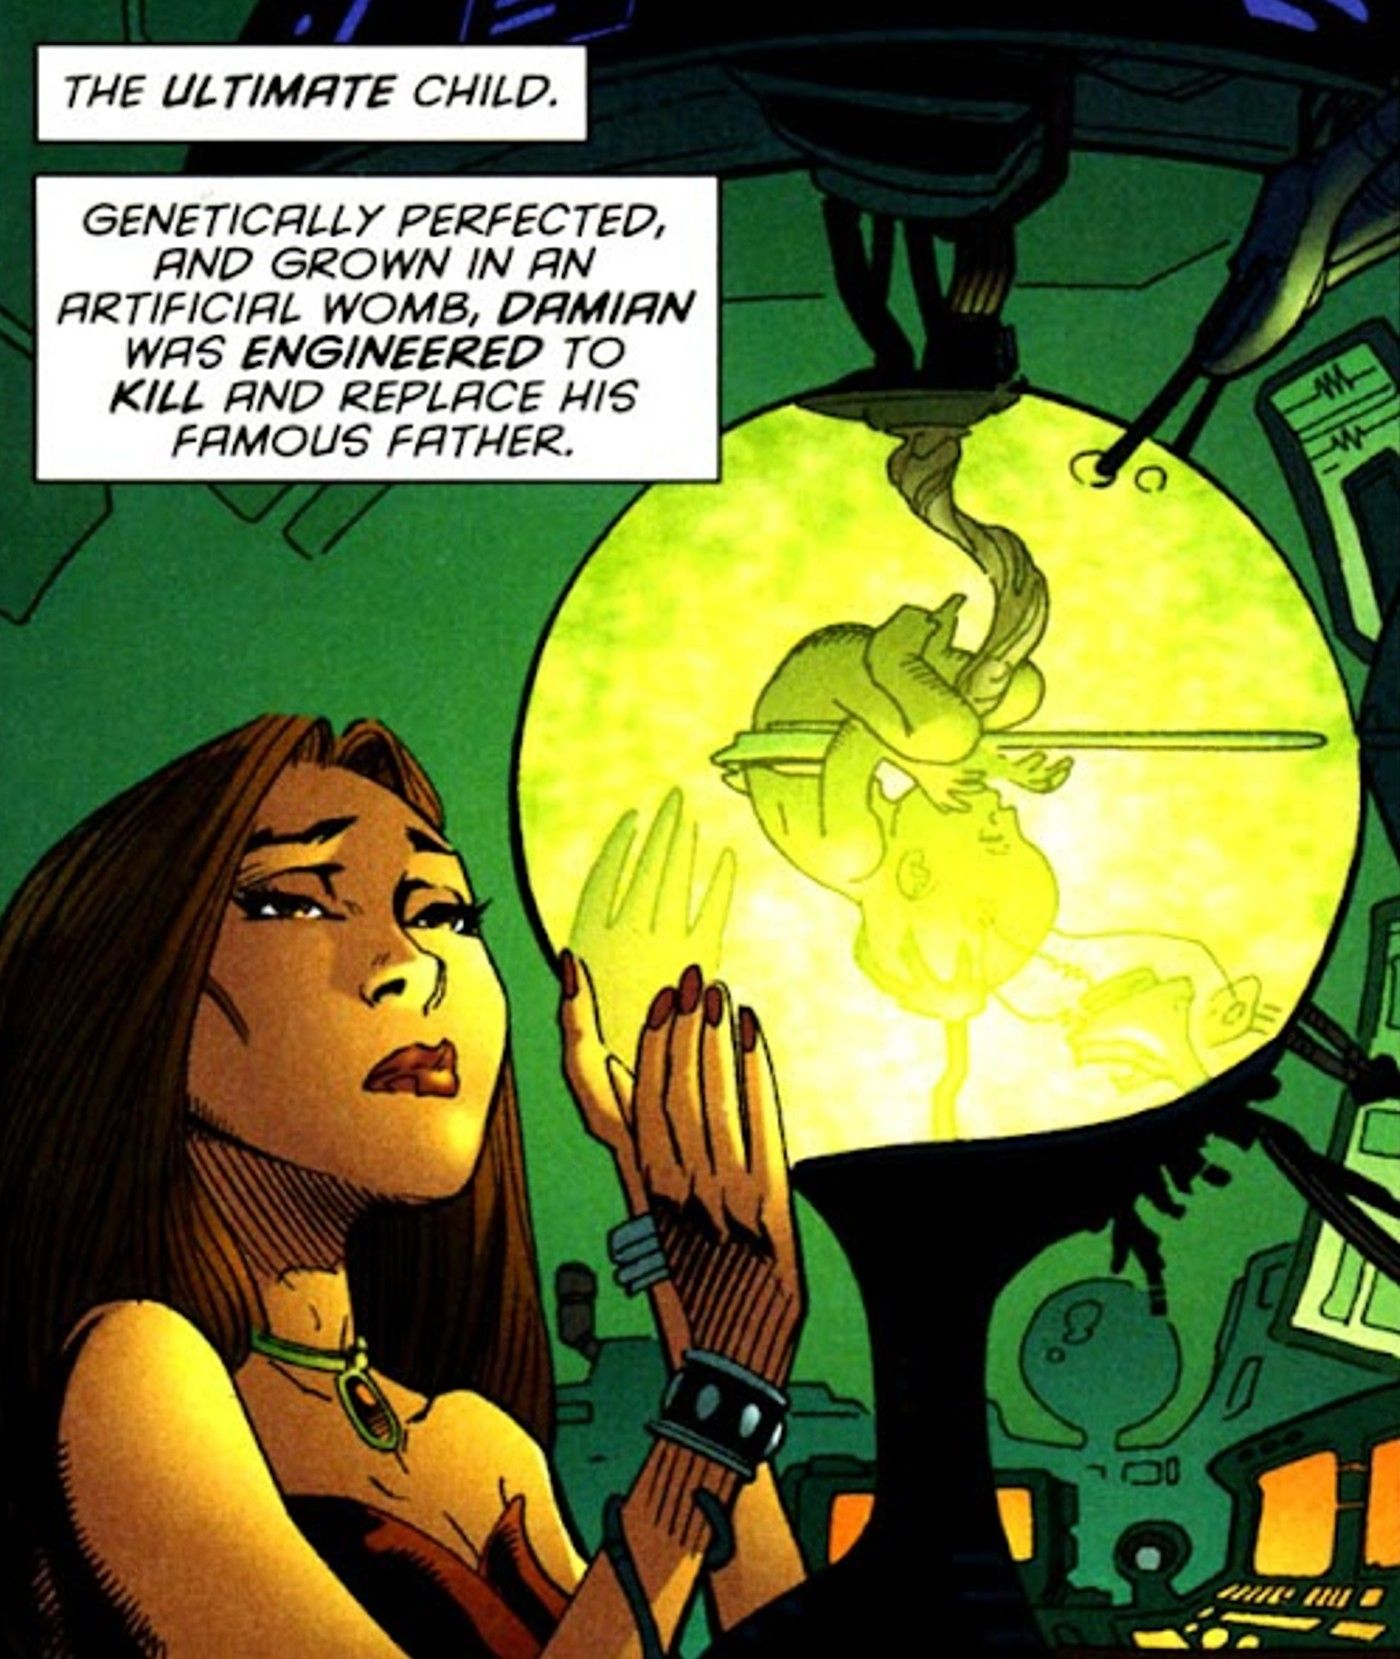 Comic book panel: Talia al Ghul looks at Damian Wayne's fetus in a green lab womb.